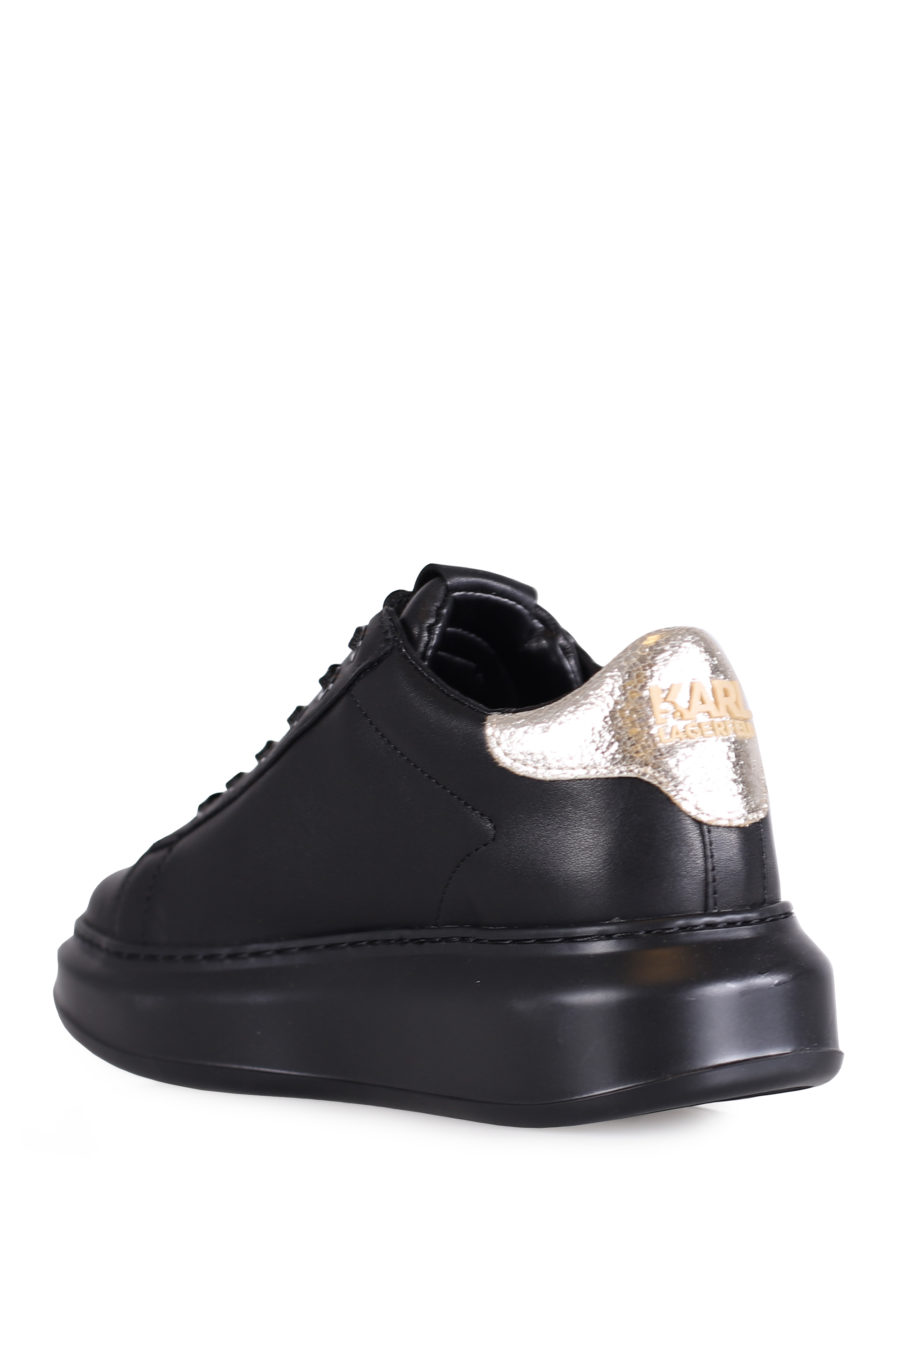 Zapatillas negras con logotipo y suela alta - IMG 0719